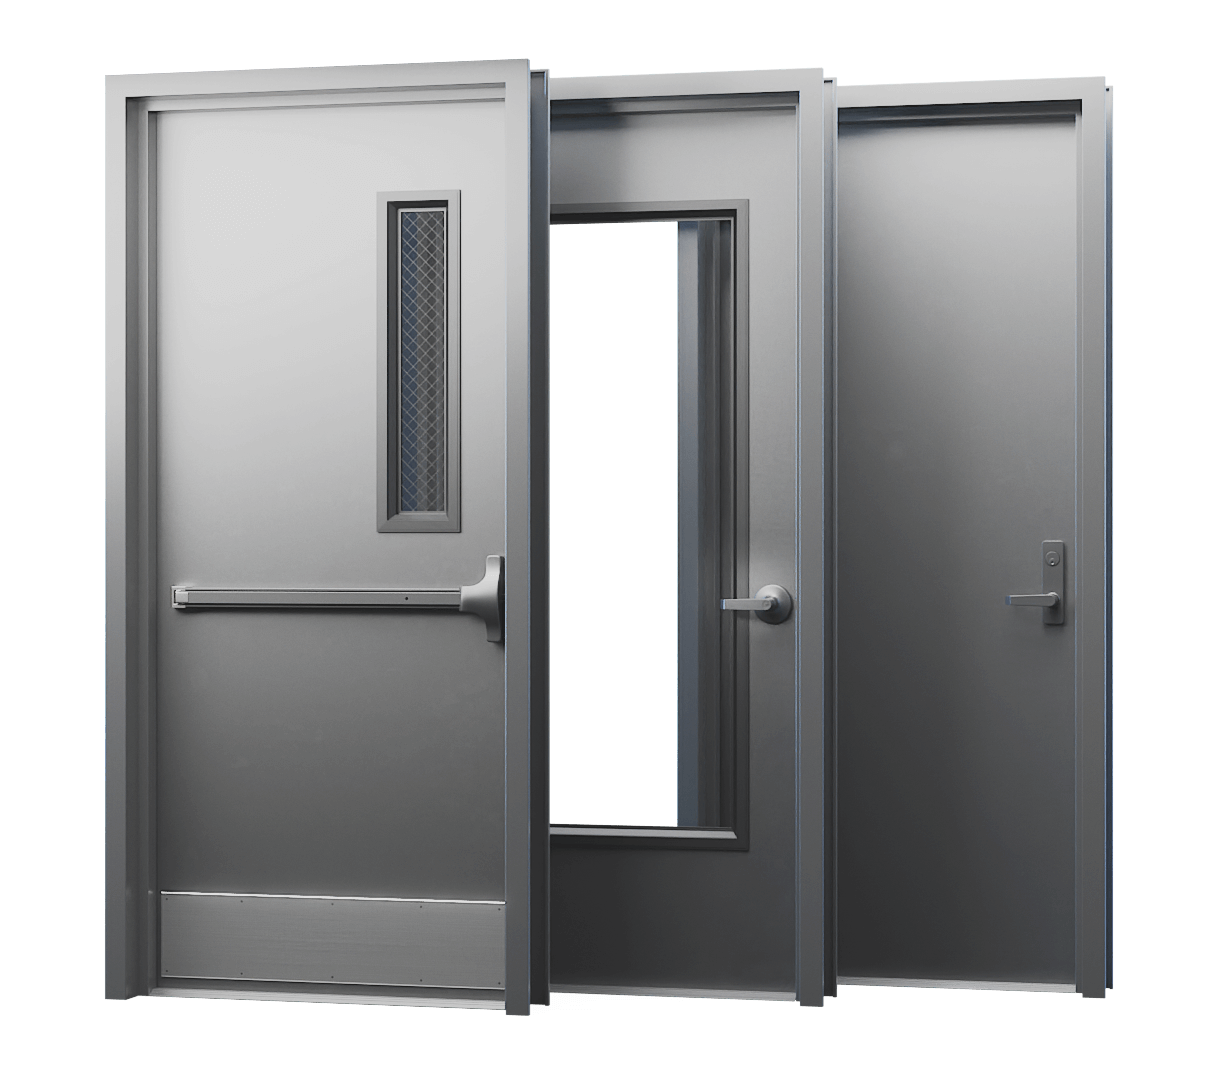 Commercial Metal Doors Suppliers in Toronto, Ontario - Ontario Doors Ltd.